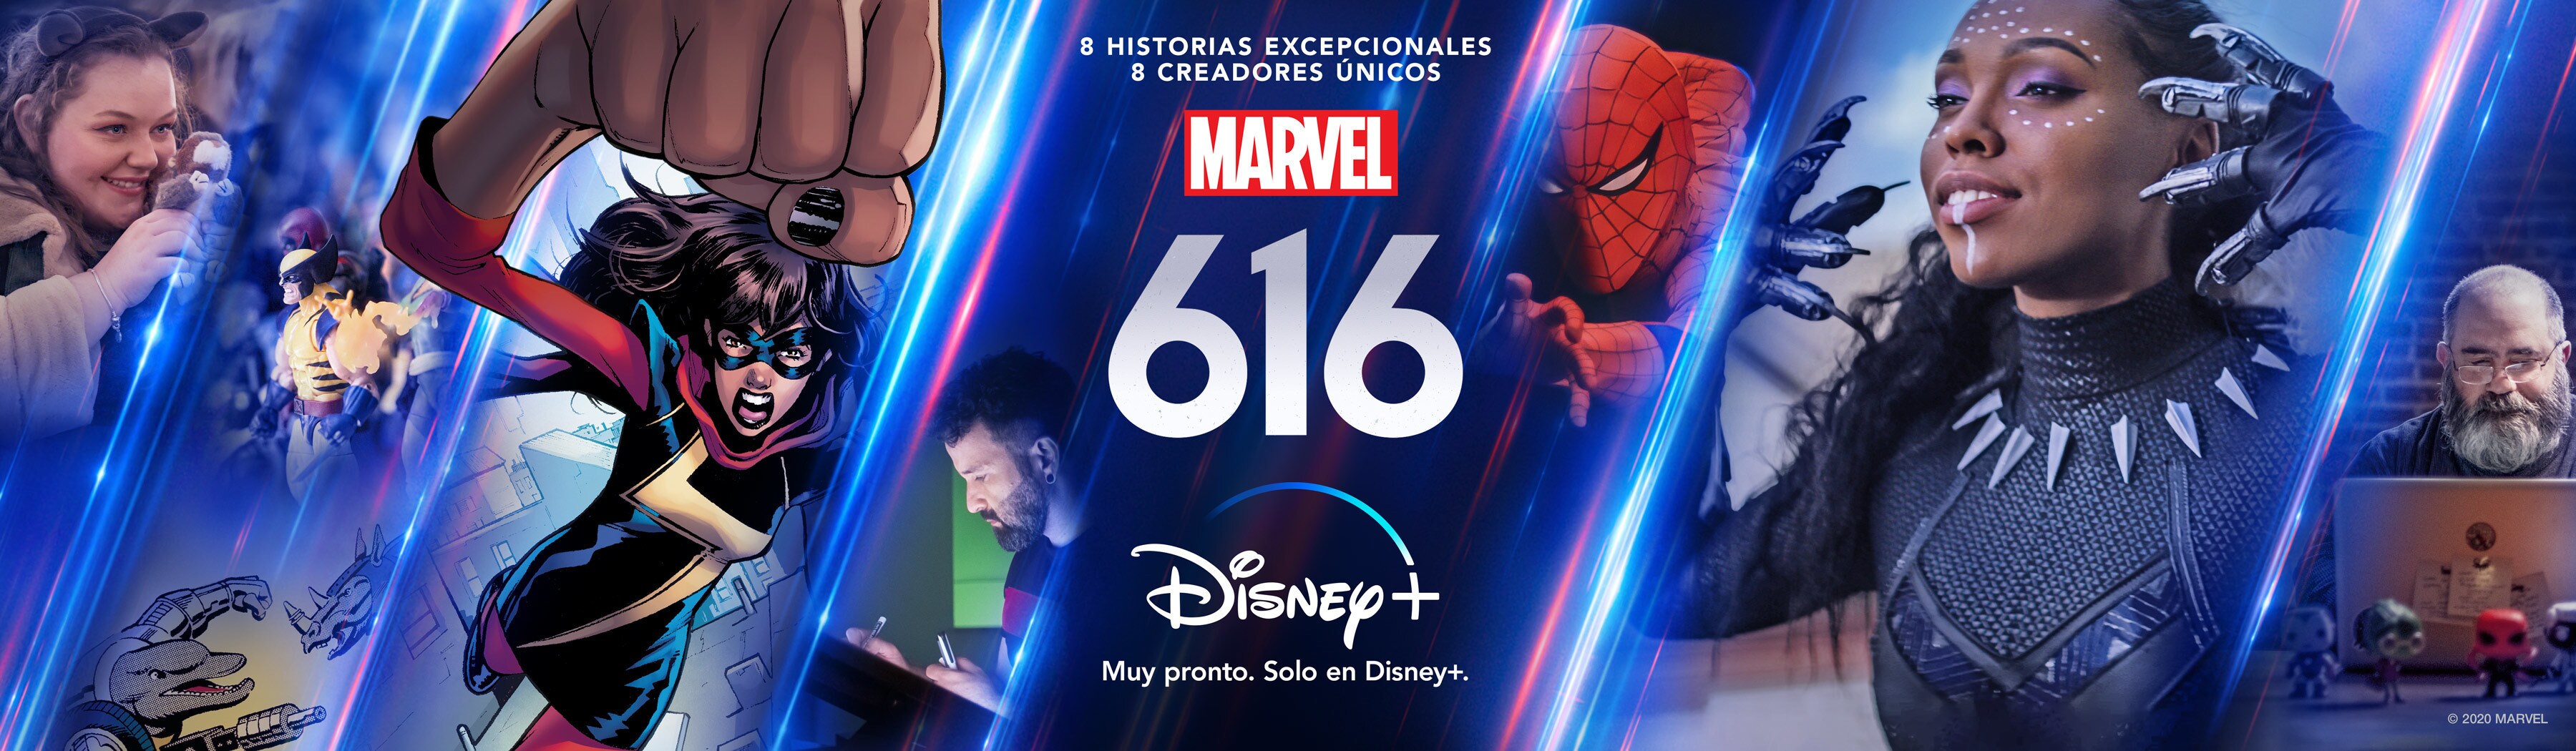 Marvel 616 | Disponible en Disney+ a partir del 17 de noviembre 